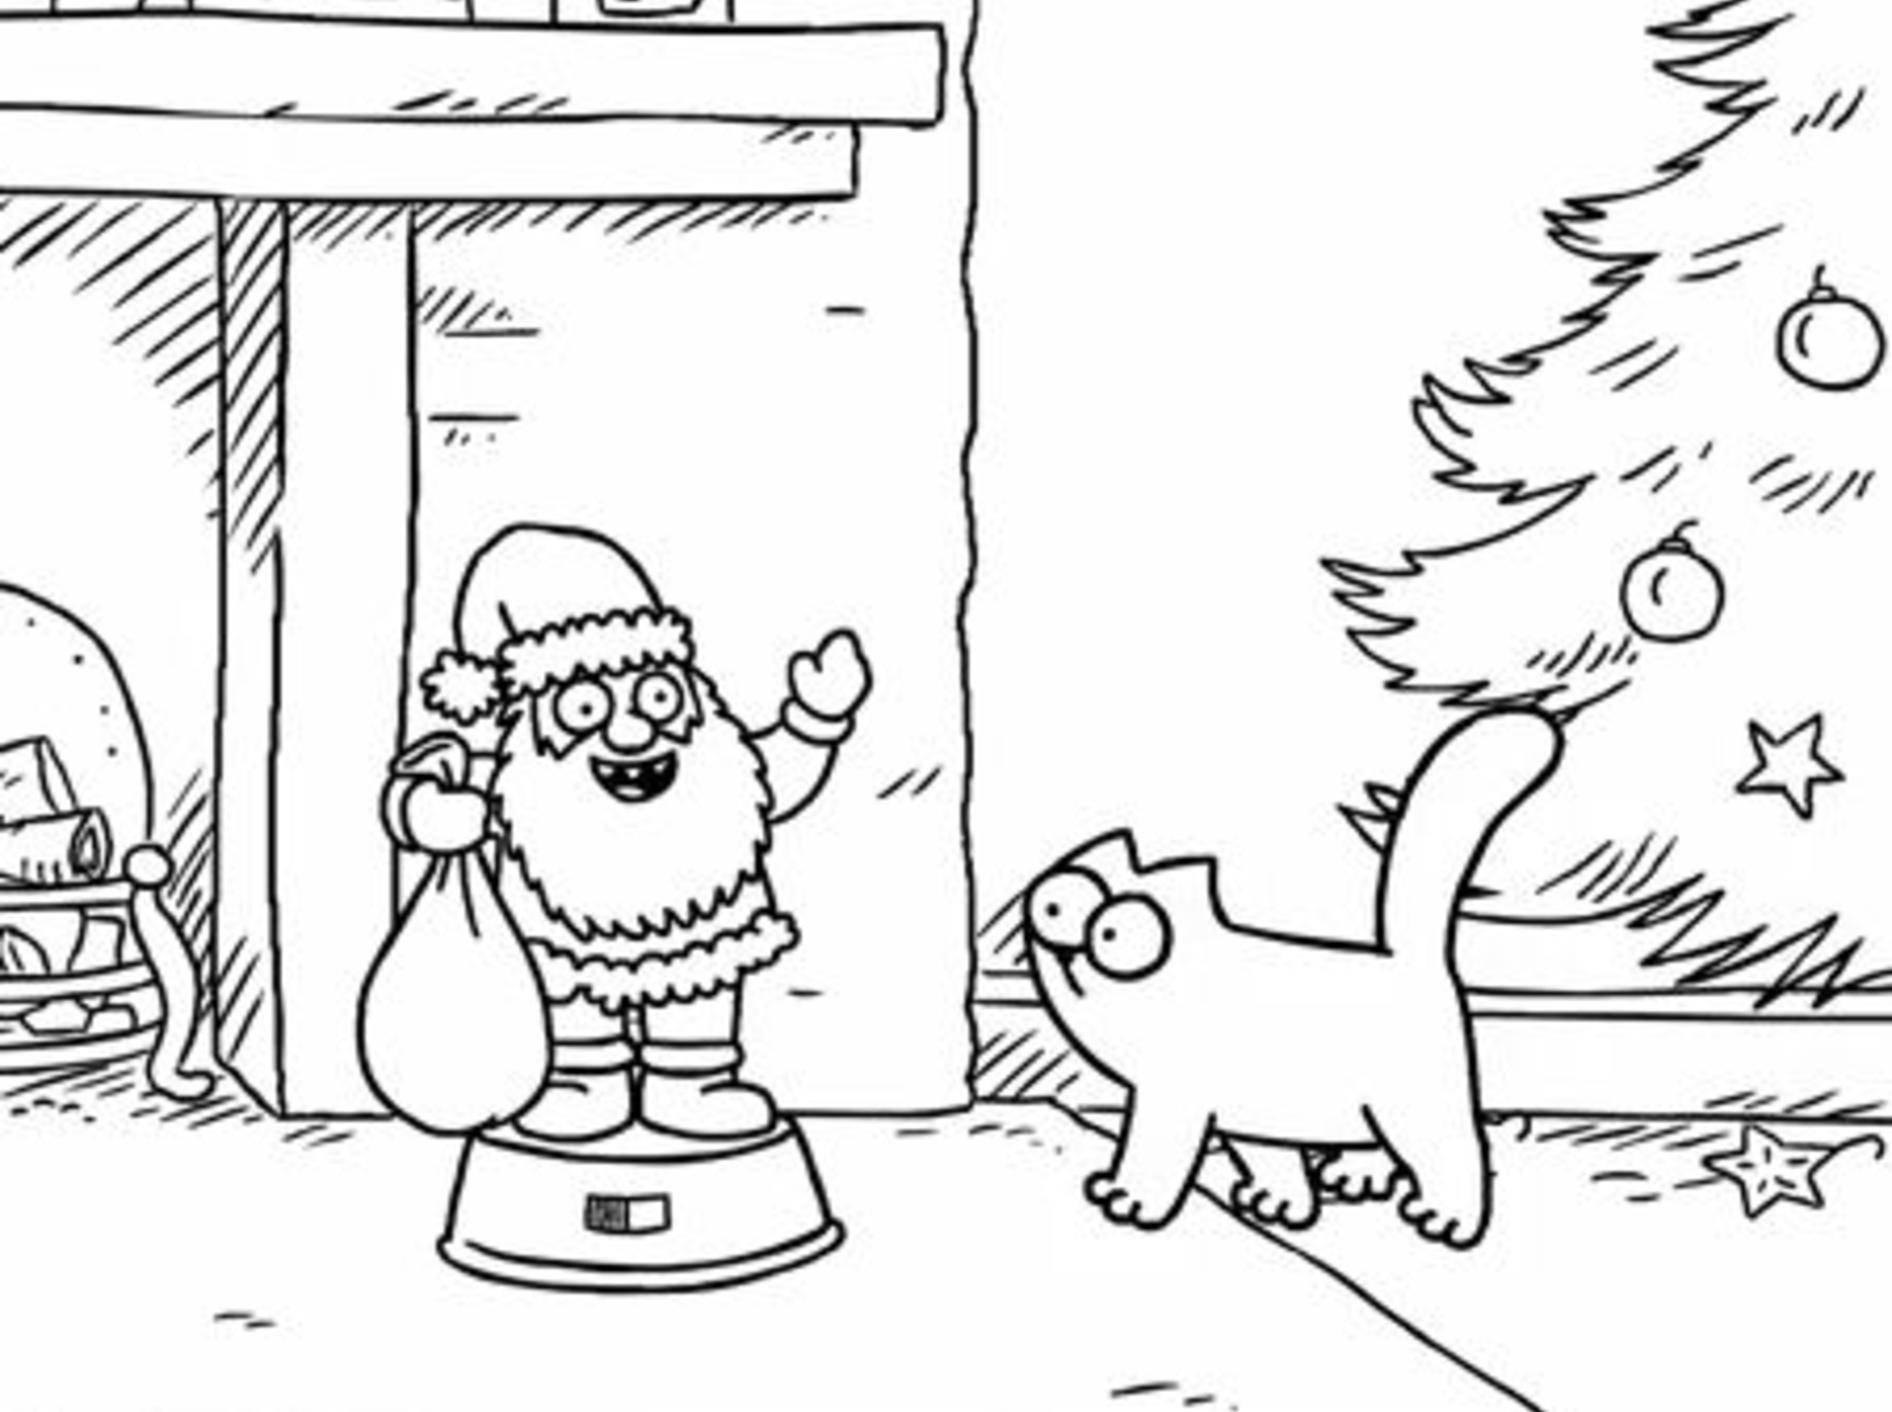 Simon's Cat im Kampf mit Weihnachtsmann – YouTube / Simon's Cat